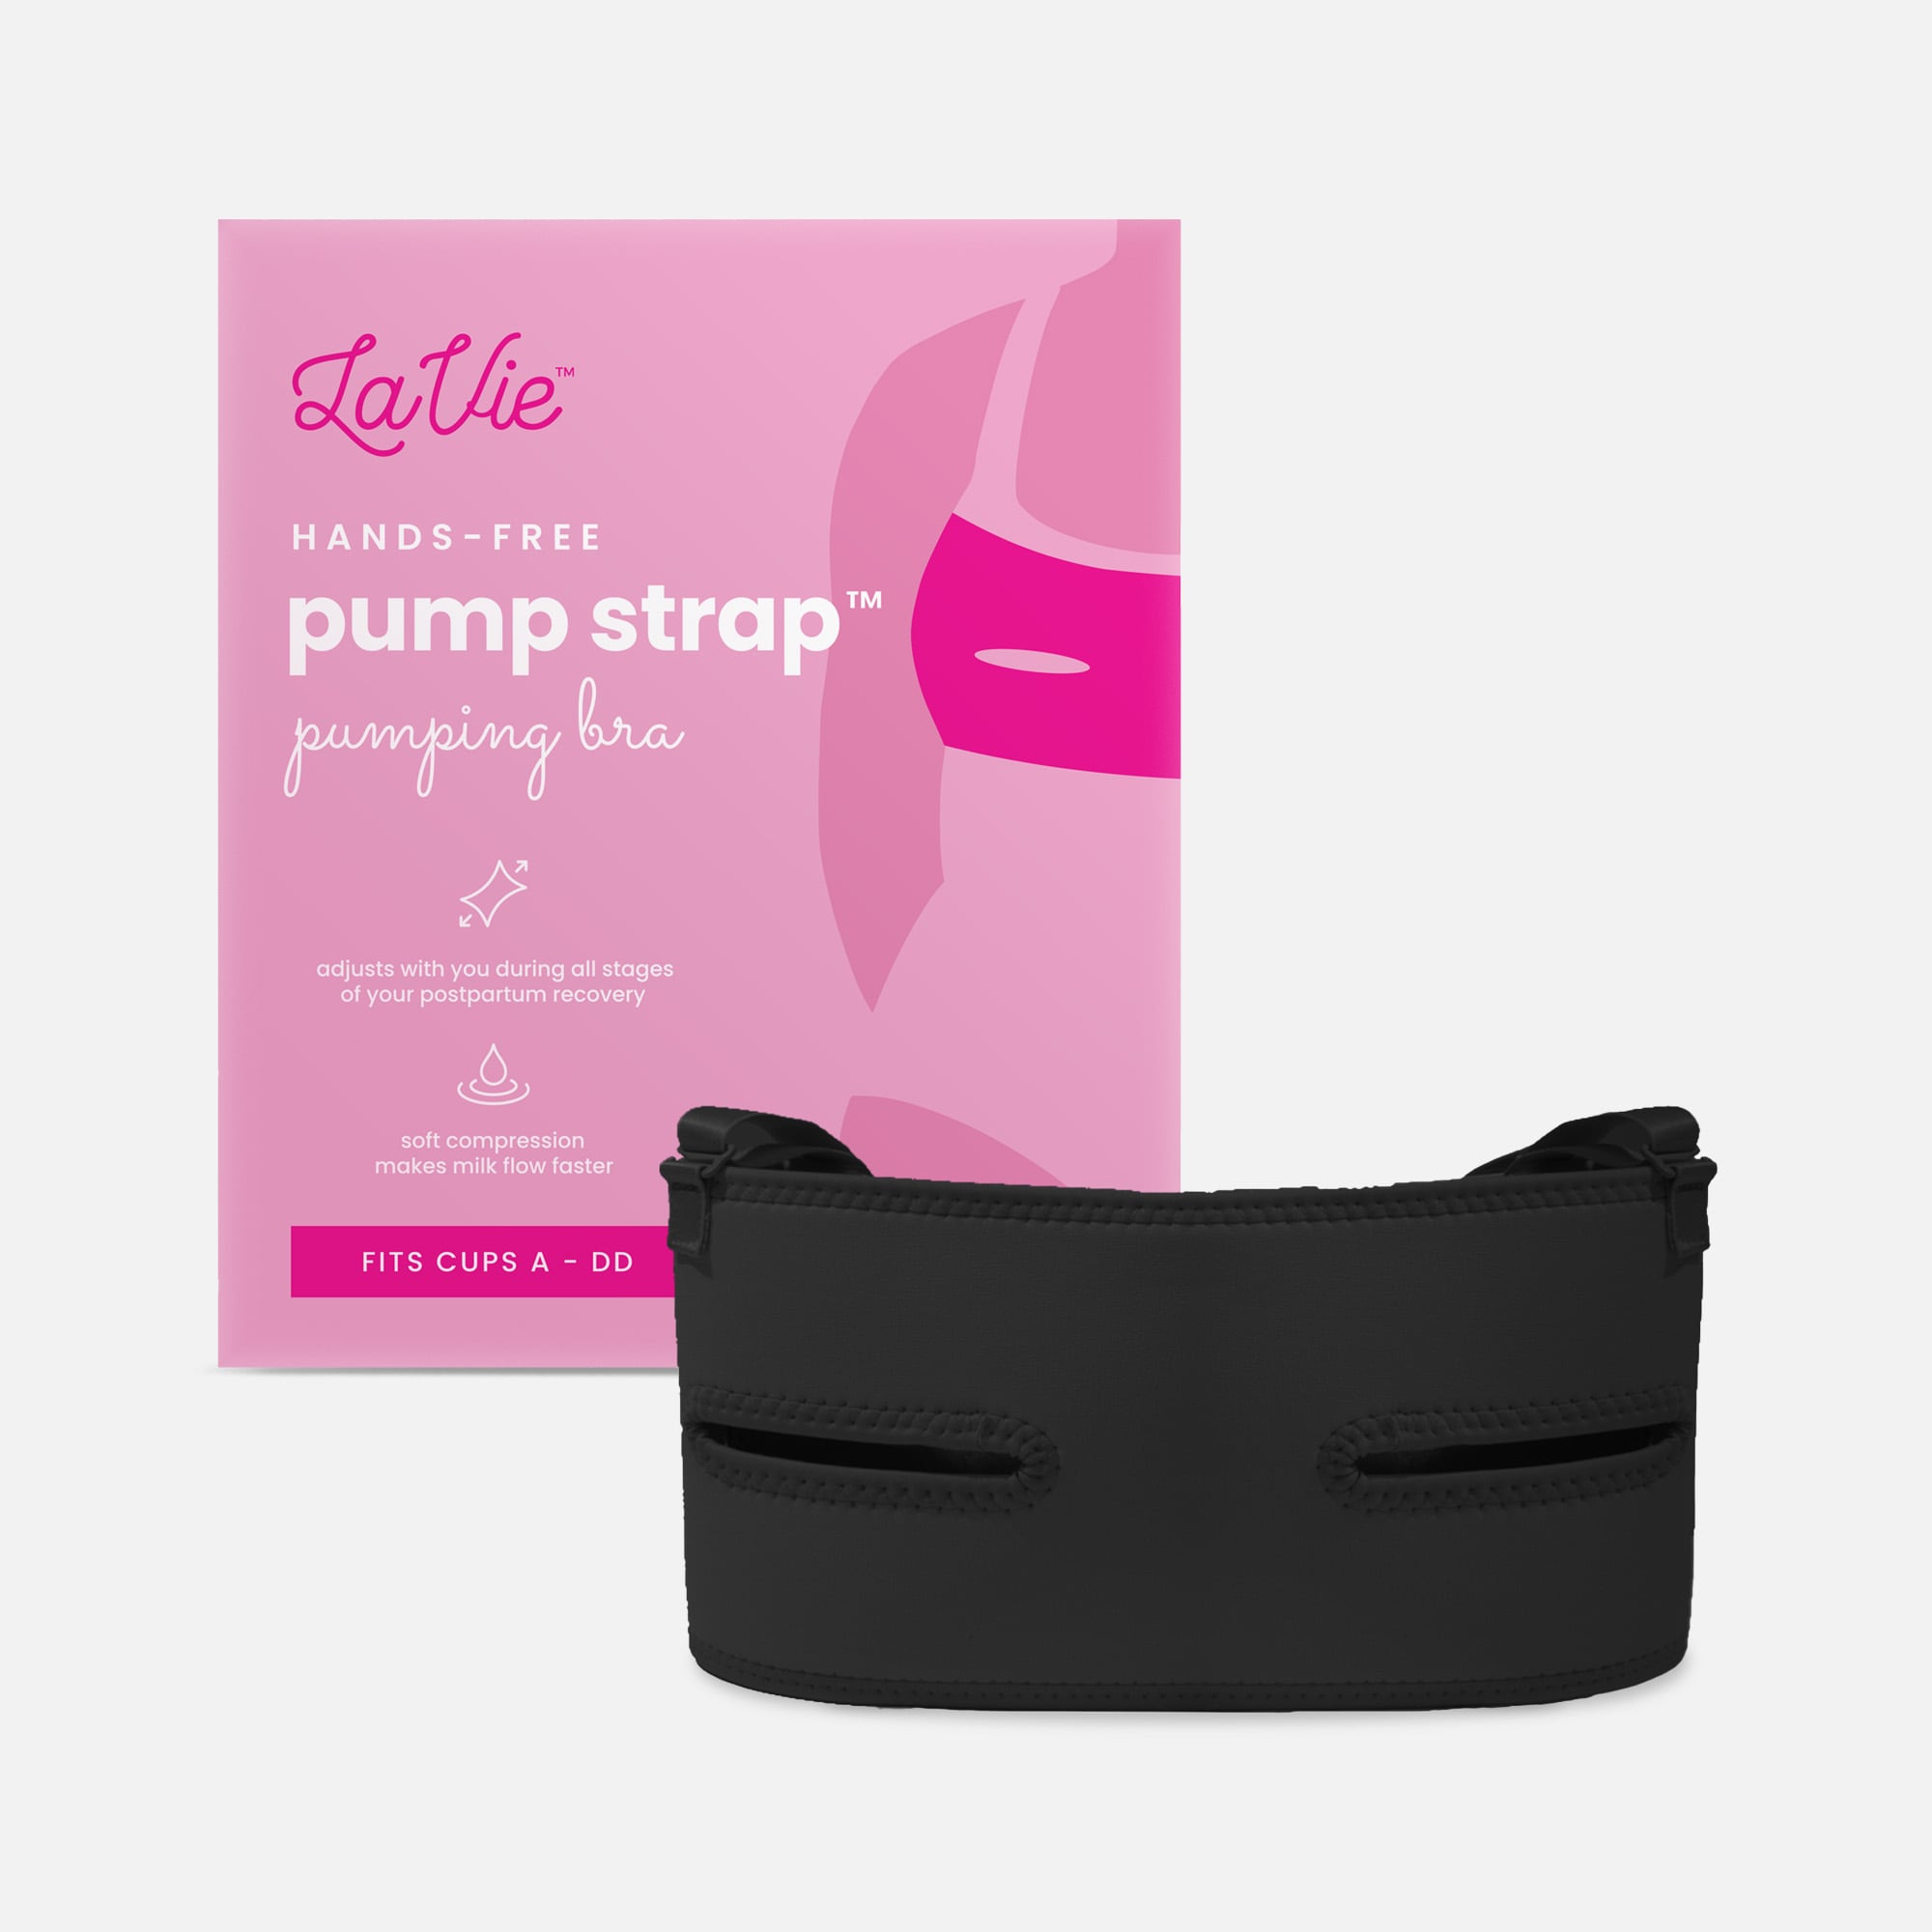 LaVie Pump Strap Hands Free Pumping Bra, Strapless, Wireless, Adjustable